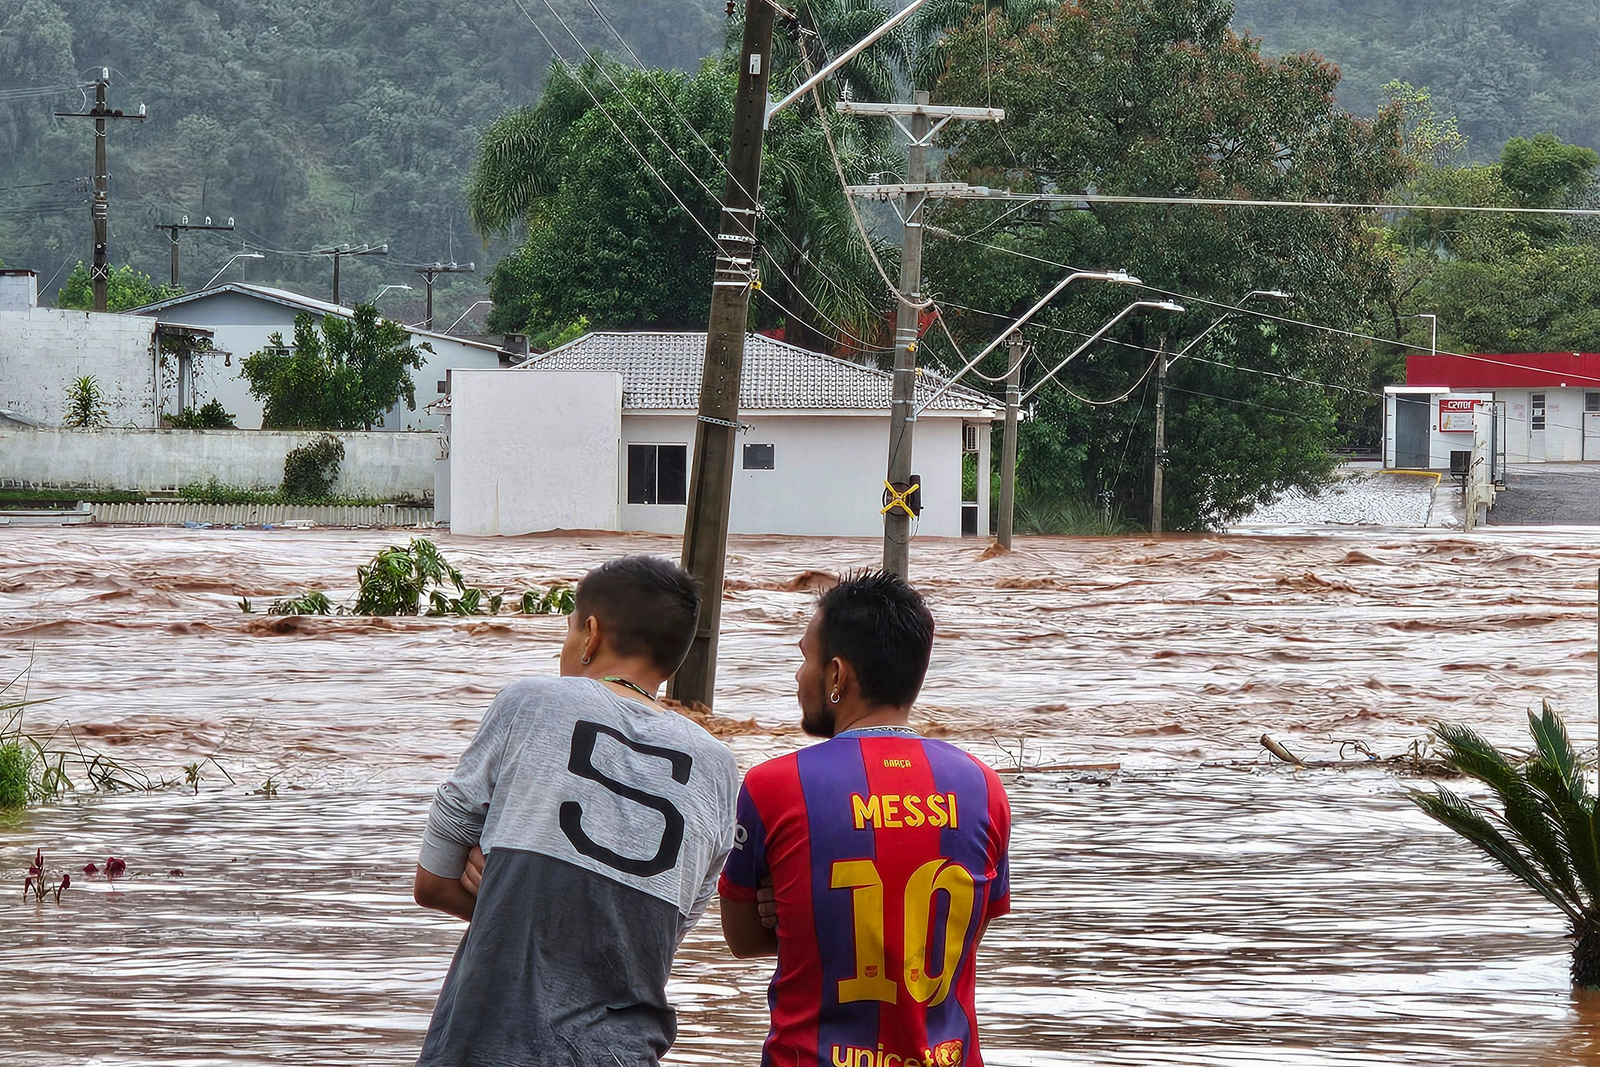 Pessoas observam uma rua inundada após fortes chuvas em Encantado, Rio Grande do Sul. Pelo menos dez pessoas morreram e 21 estão desaparecidas devido às fortes chuvas no estado. — Foto: Gustavo Ghisleni/AFP